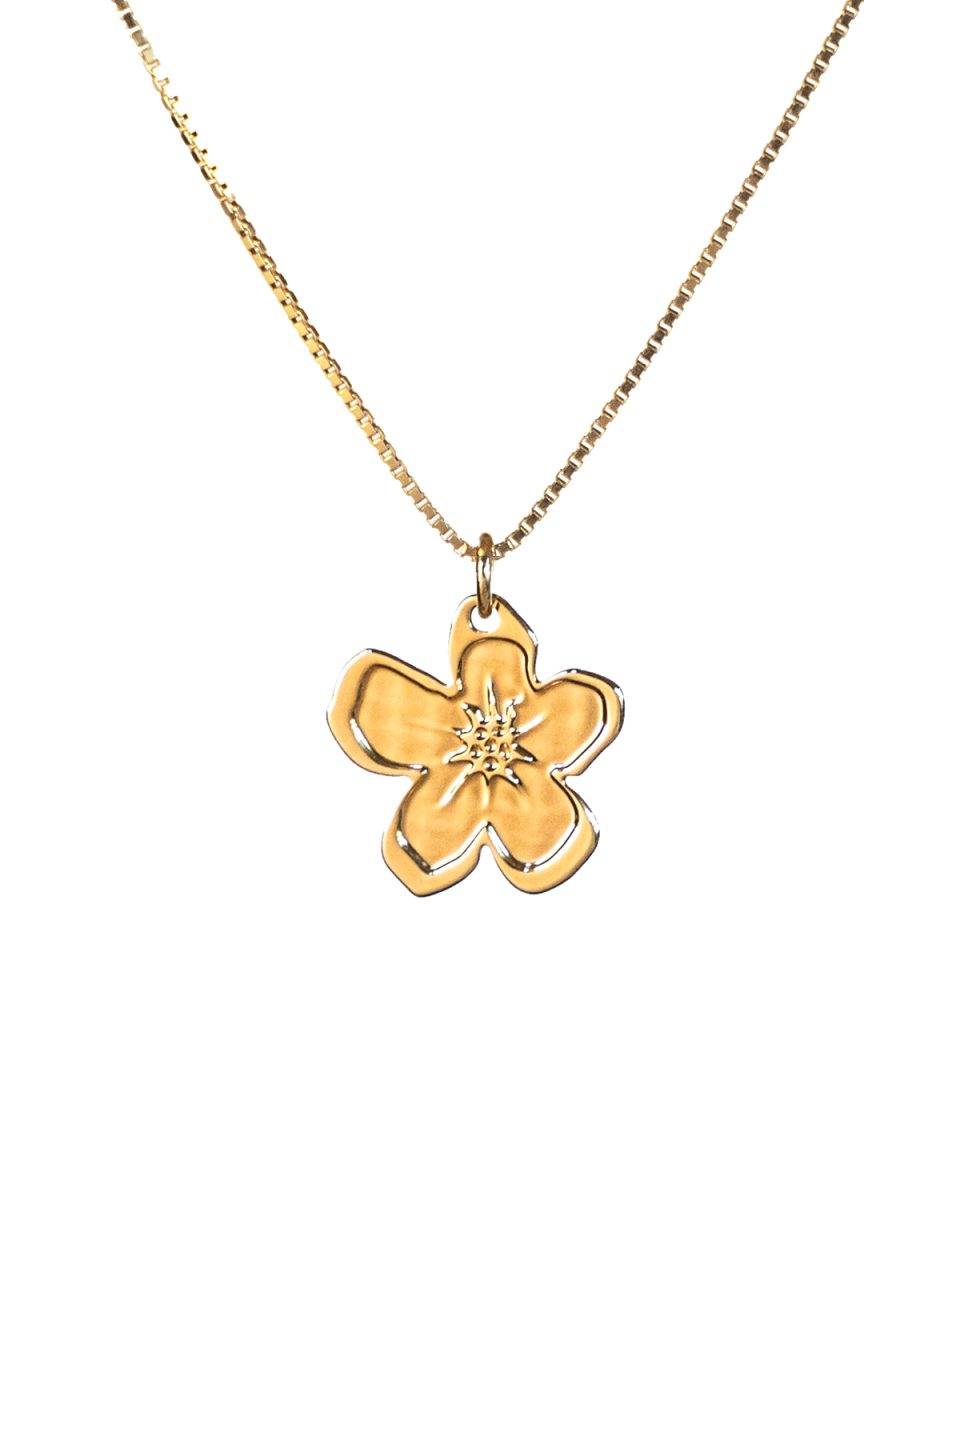 Pozlaćeni lančić sa zlatnim privjeskom u obliku cvijetića s pet latica